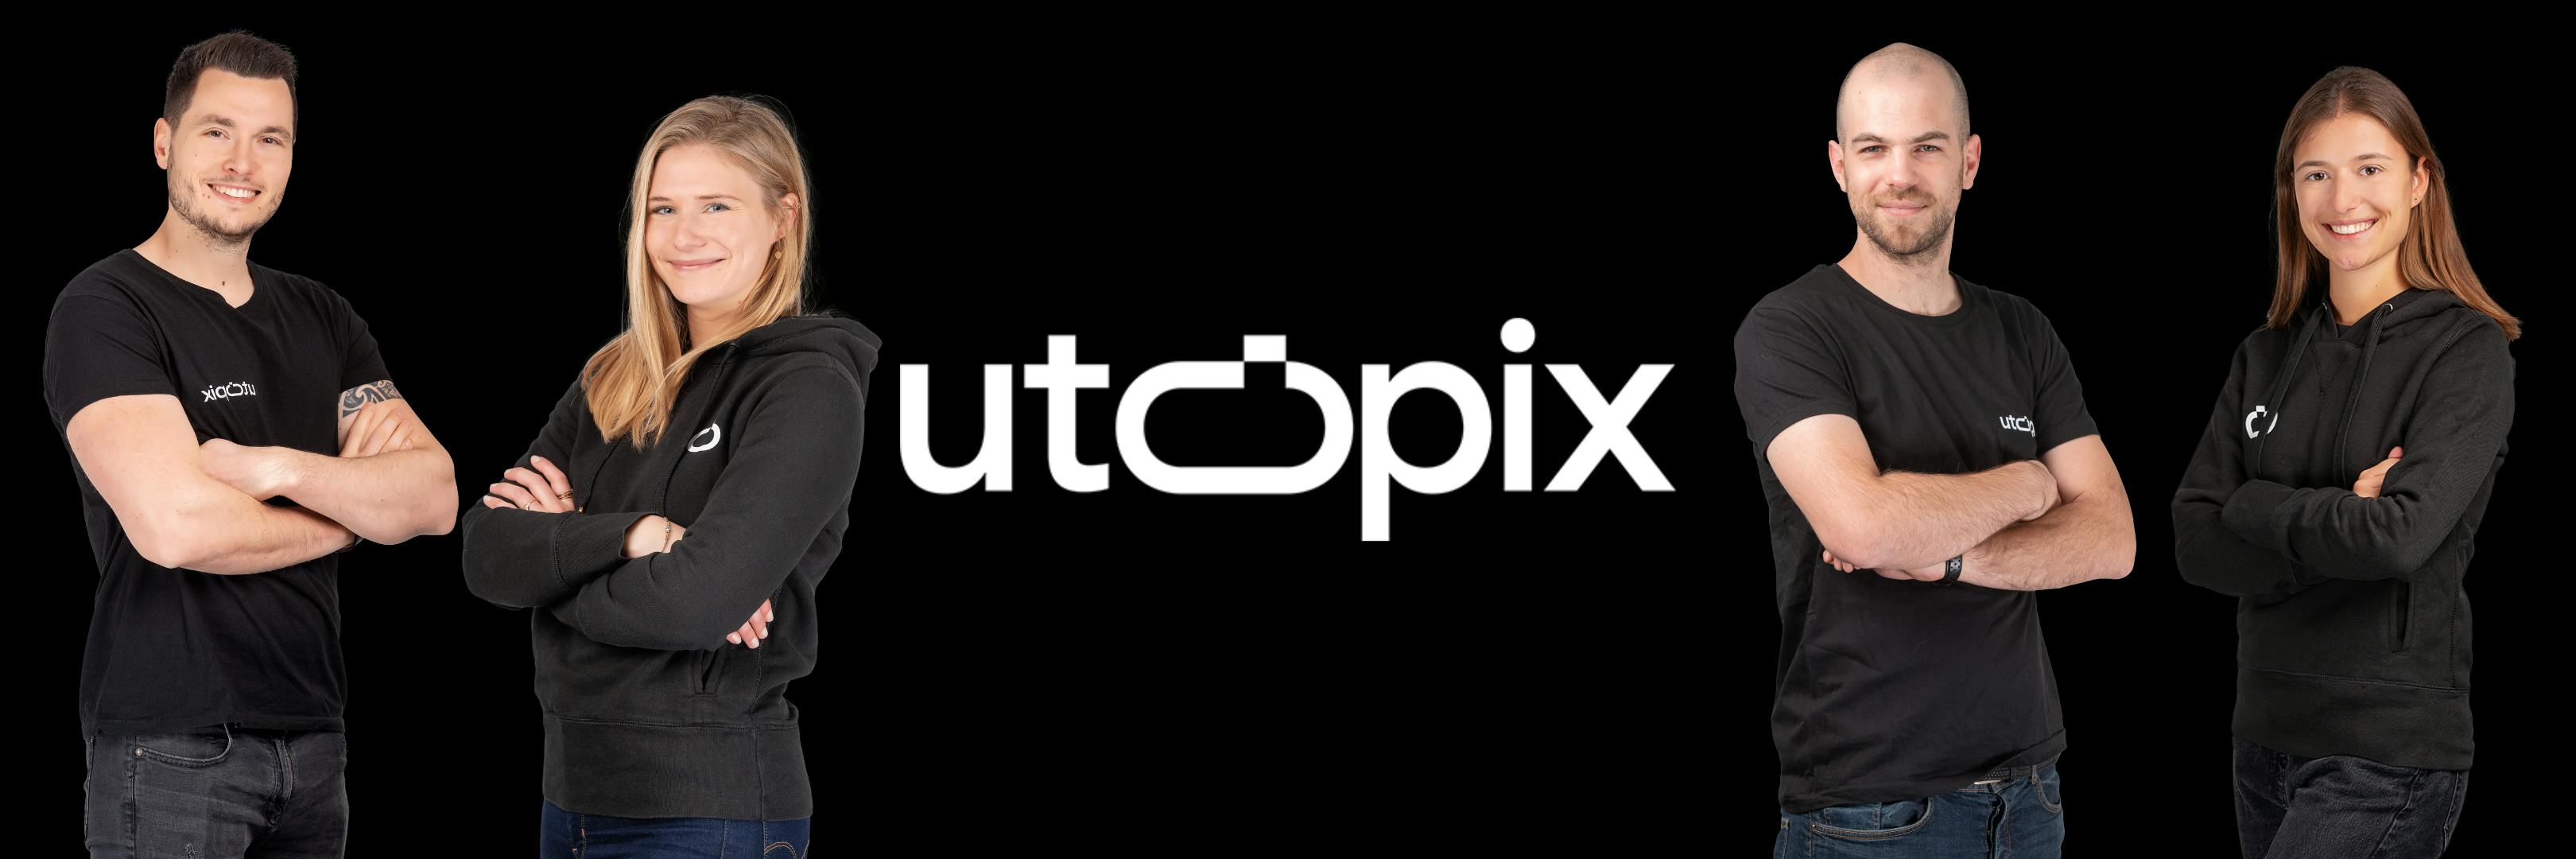 Utopix – Qui sommes-nous ?